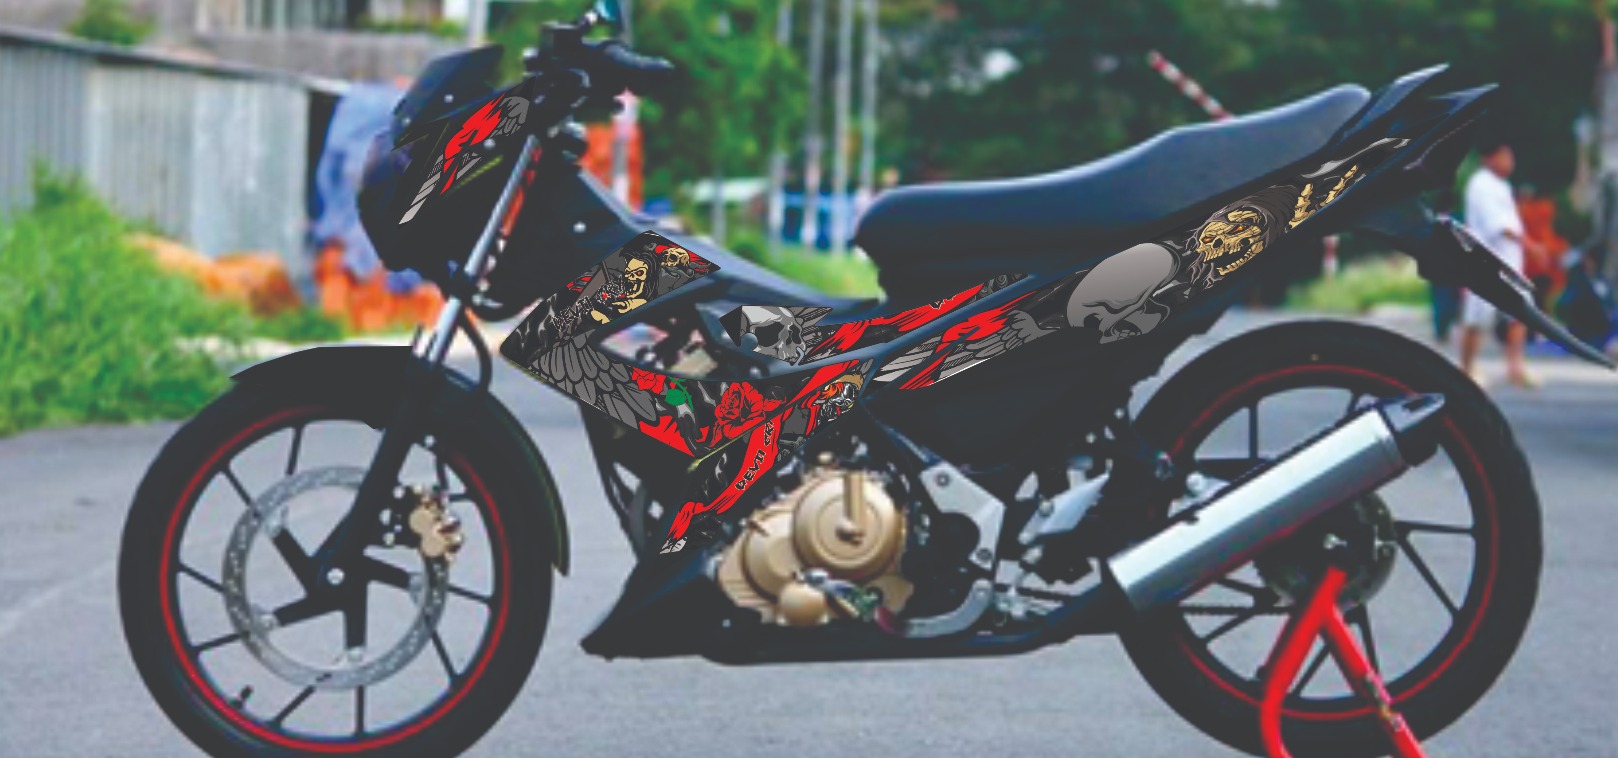 STRIPING STICKER MOTOR SATRIA FU FL 2014 2015 KARAKTER FULL VARIASI WARNA KEREN MURAH BAHAN GRAFTAC TAHAN SAMPAI 4 5 TAHUN KE DEPAN Lazada Indonesia